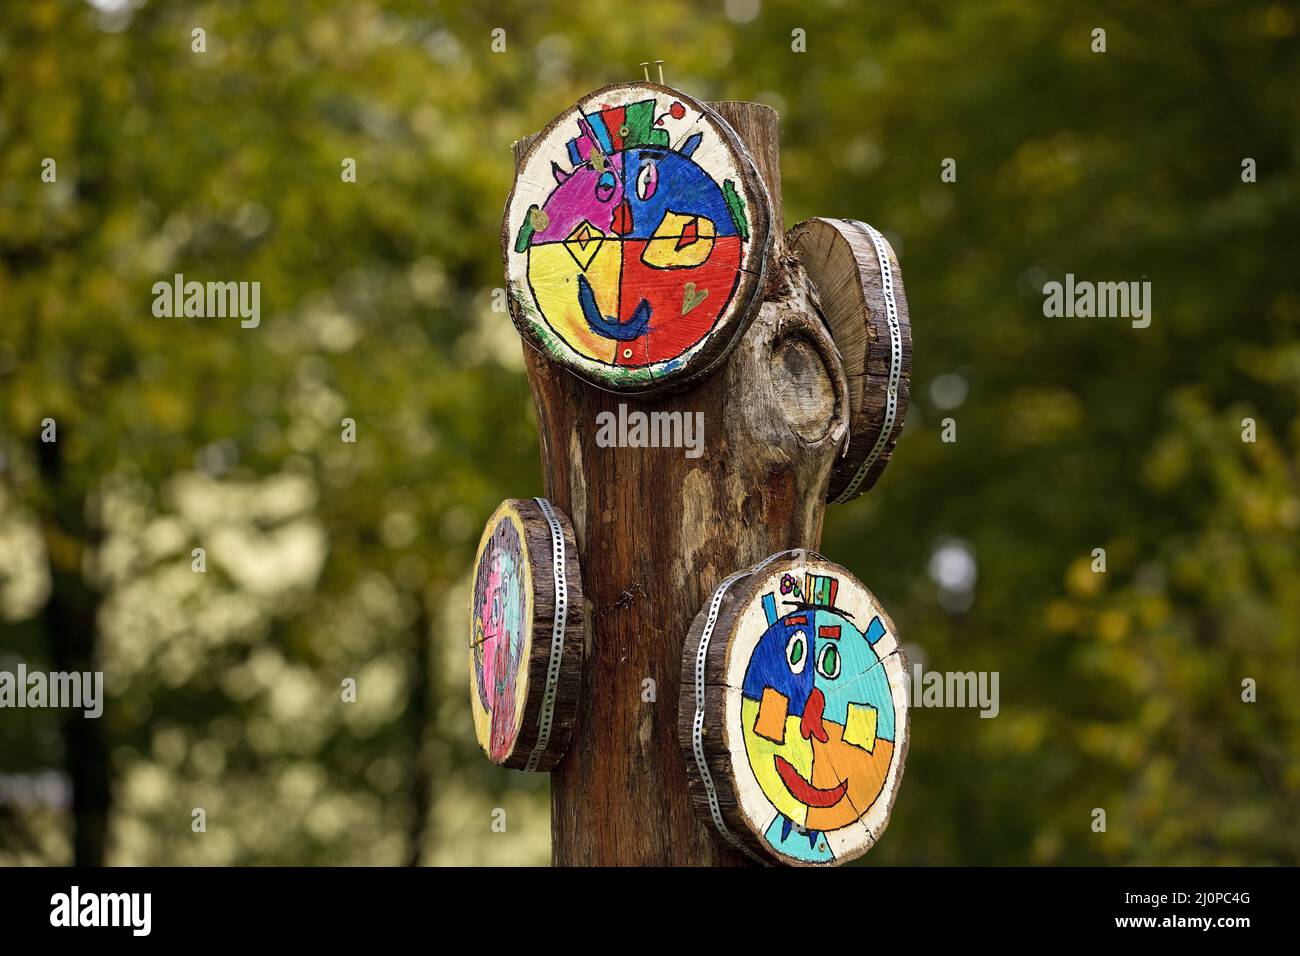 Obra de arte que frota discos de estaca, diseñados por niños, proyecto de arte Halver, Alemania, Europa Foto de stock